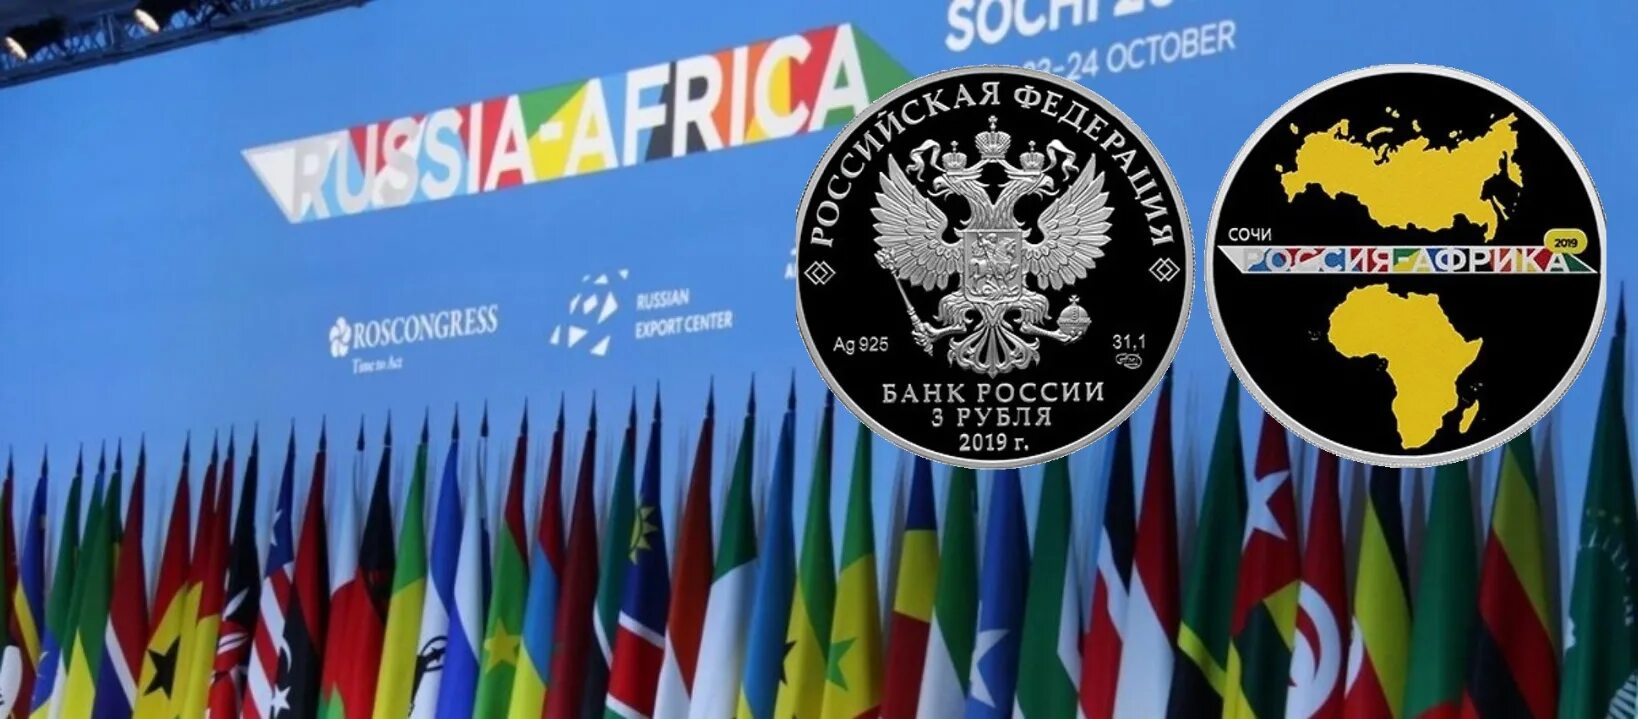 Саммит Россия Африка 2019 Сочи. Саммит Россия Африка лого. Саммит Россия Африка 2023 логотип. Саммит "Россия - Африка" в Сочи 2021. Саммит 2023 россия